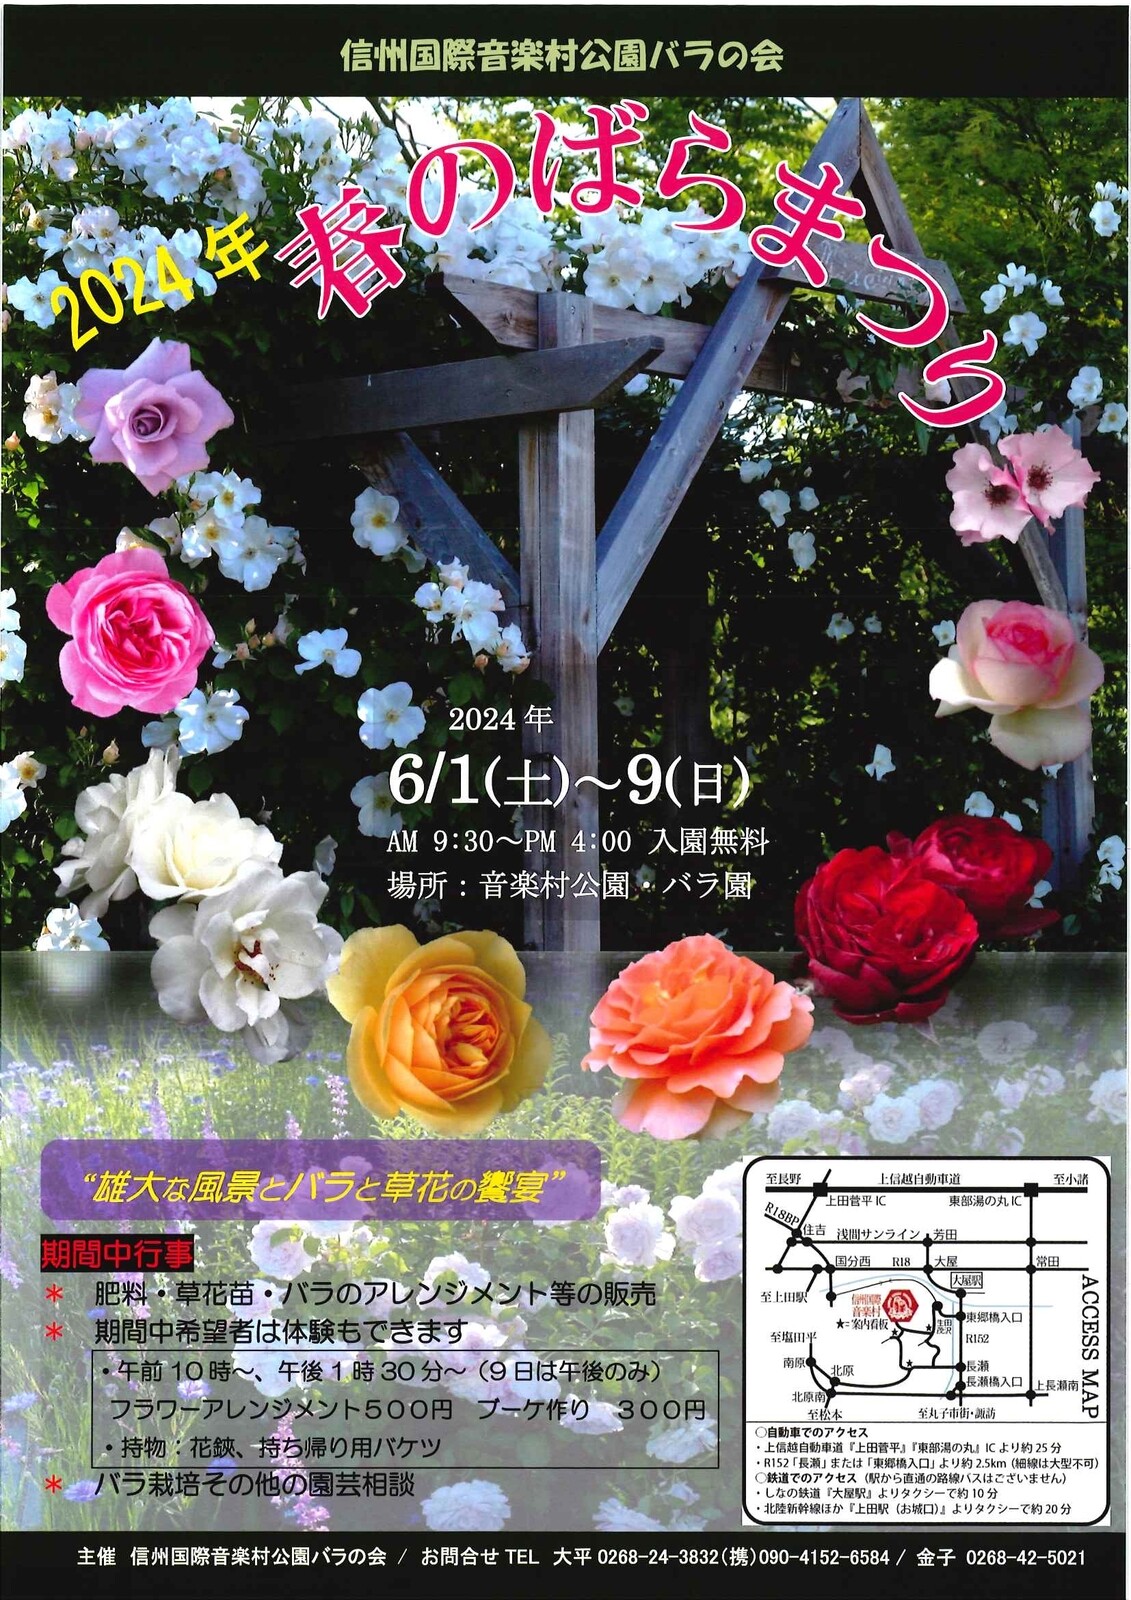 6/1〜6/9に信州国際音楽村にて「春のばらまつり」が開催！体験イベントも有り